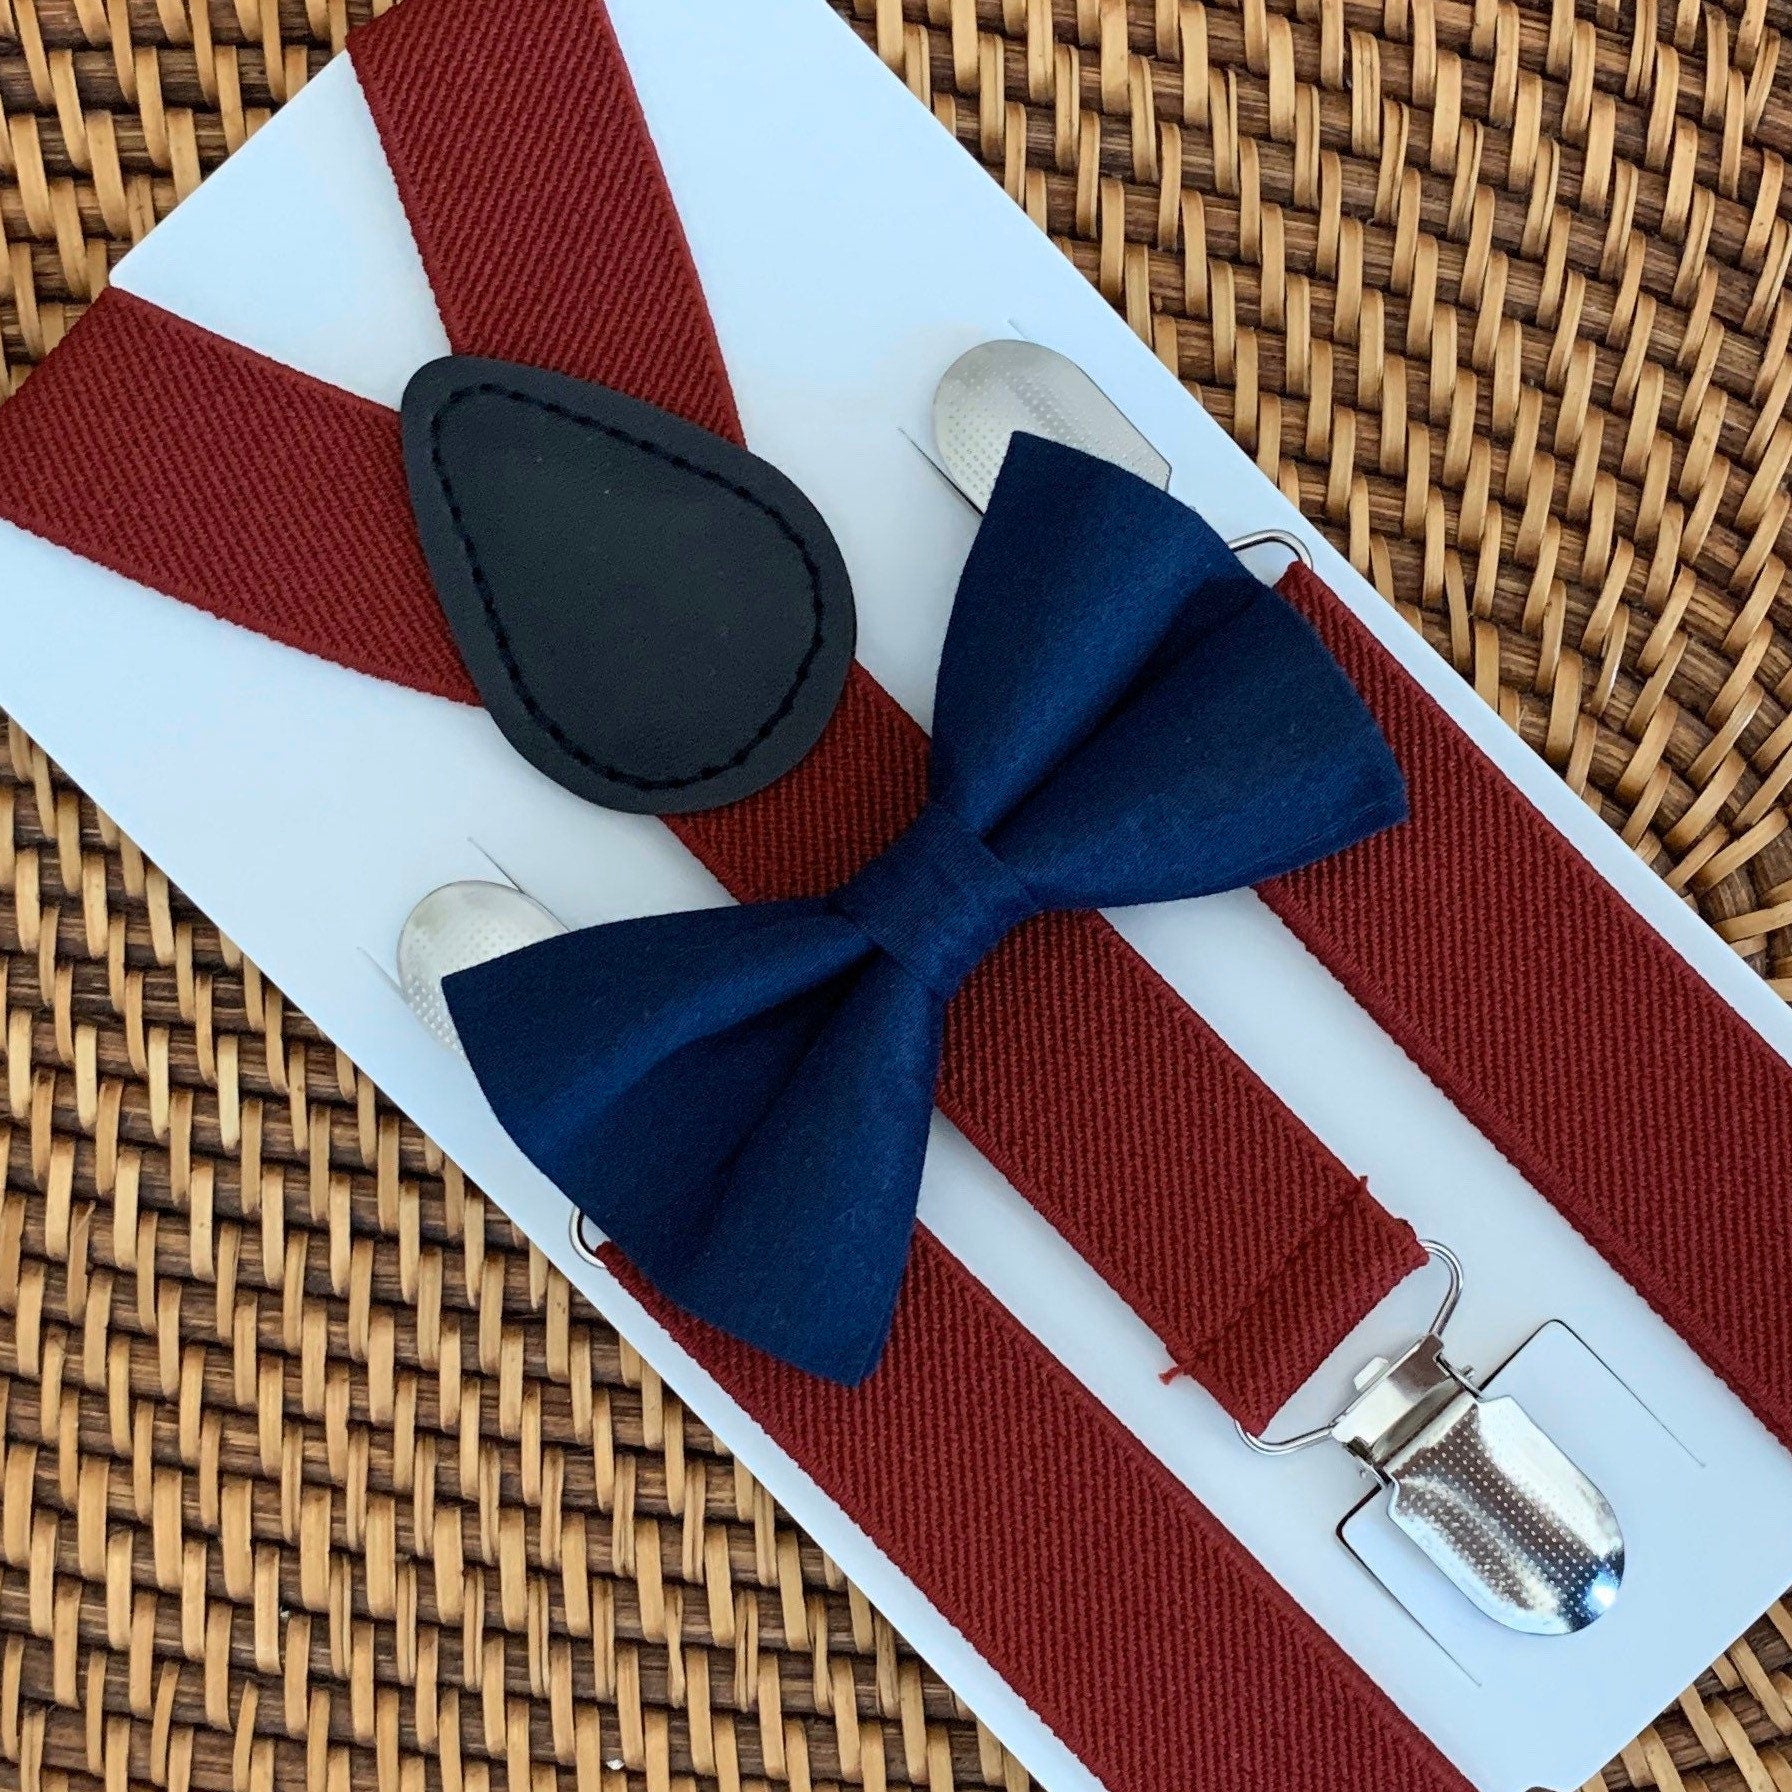 Navy Bow Tie & Burgundy Suspenders Set